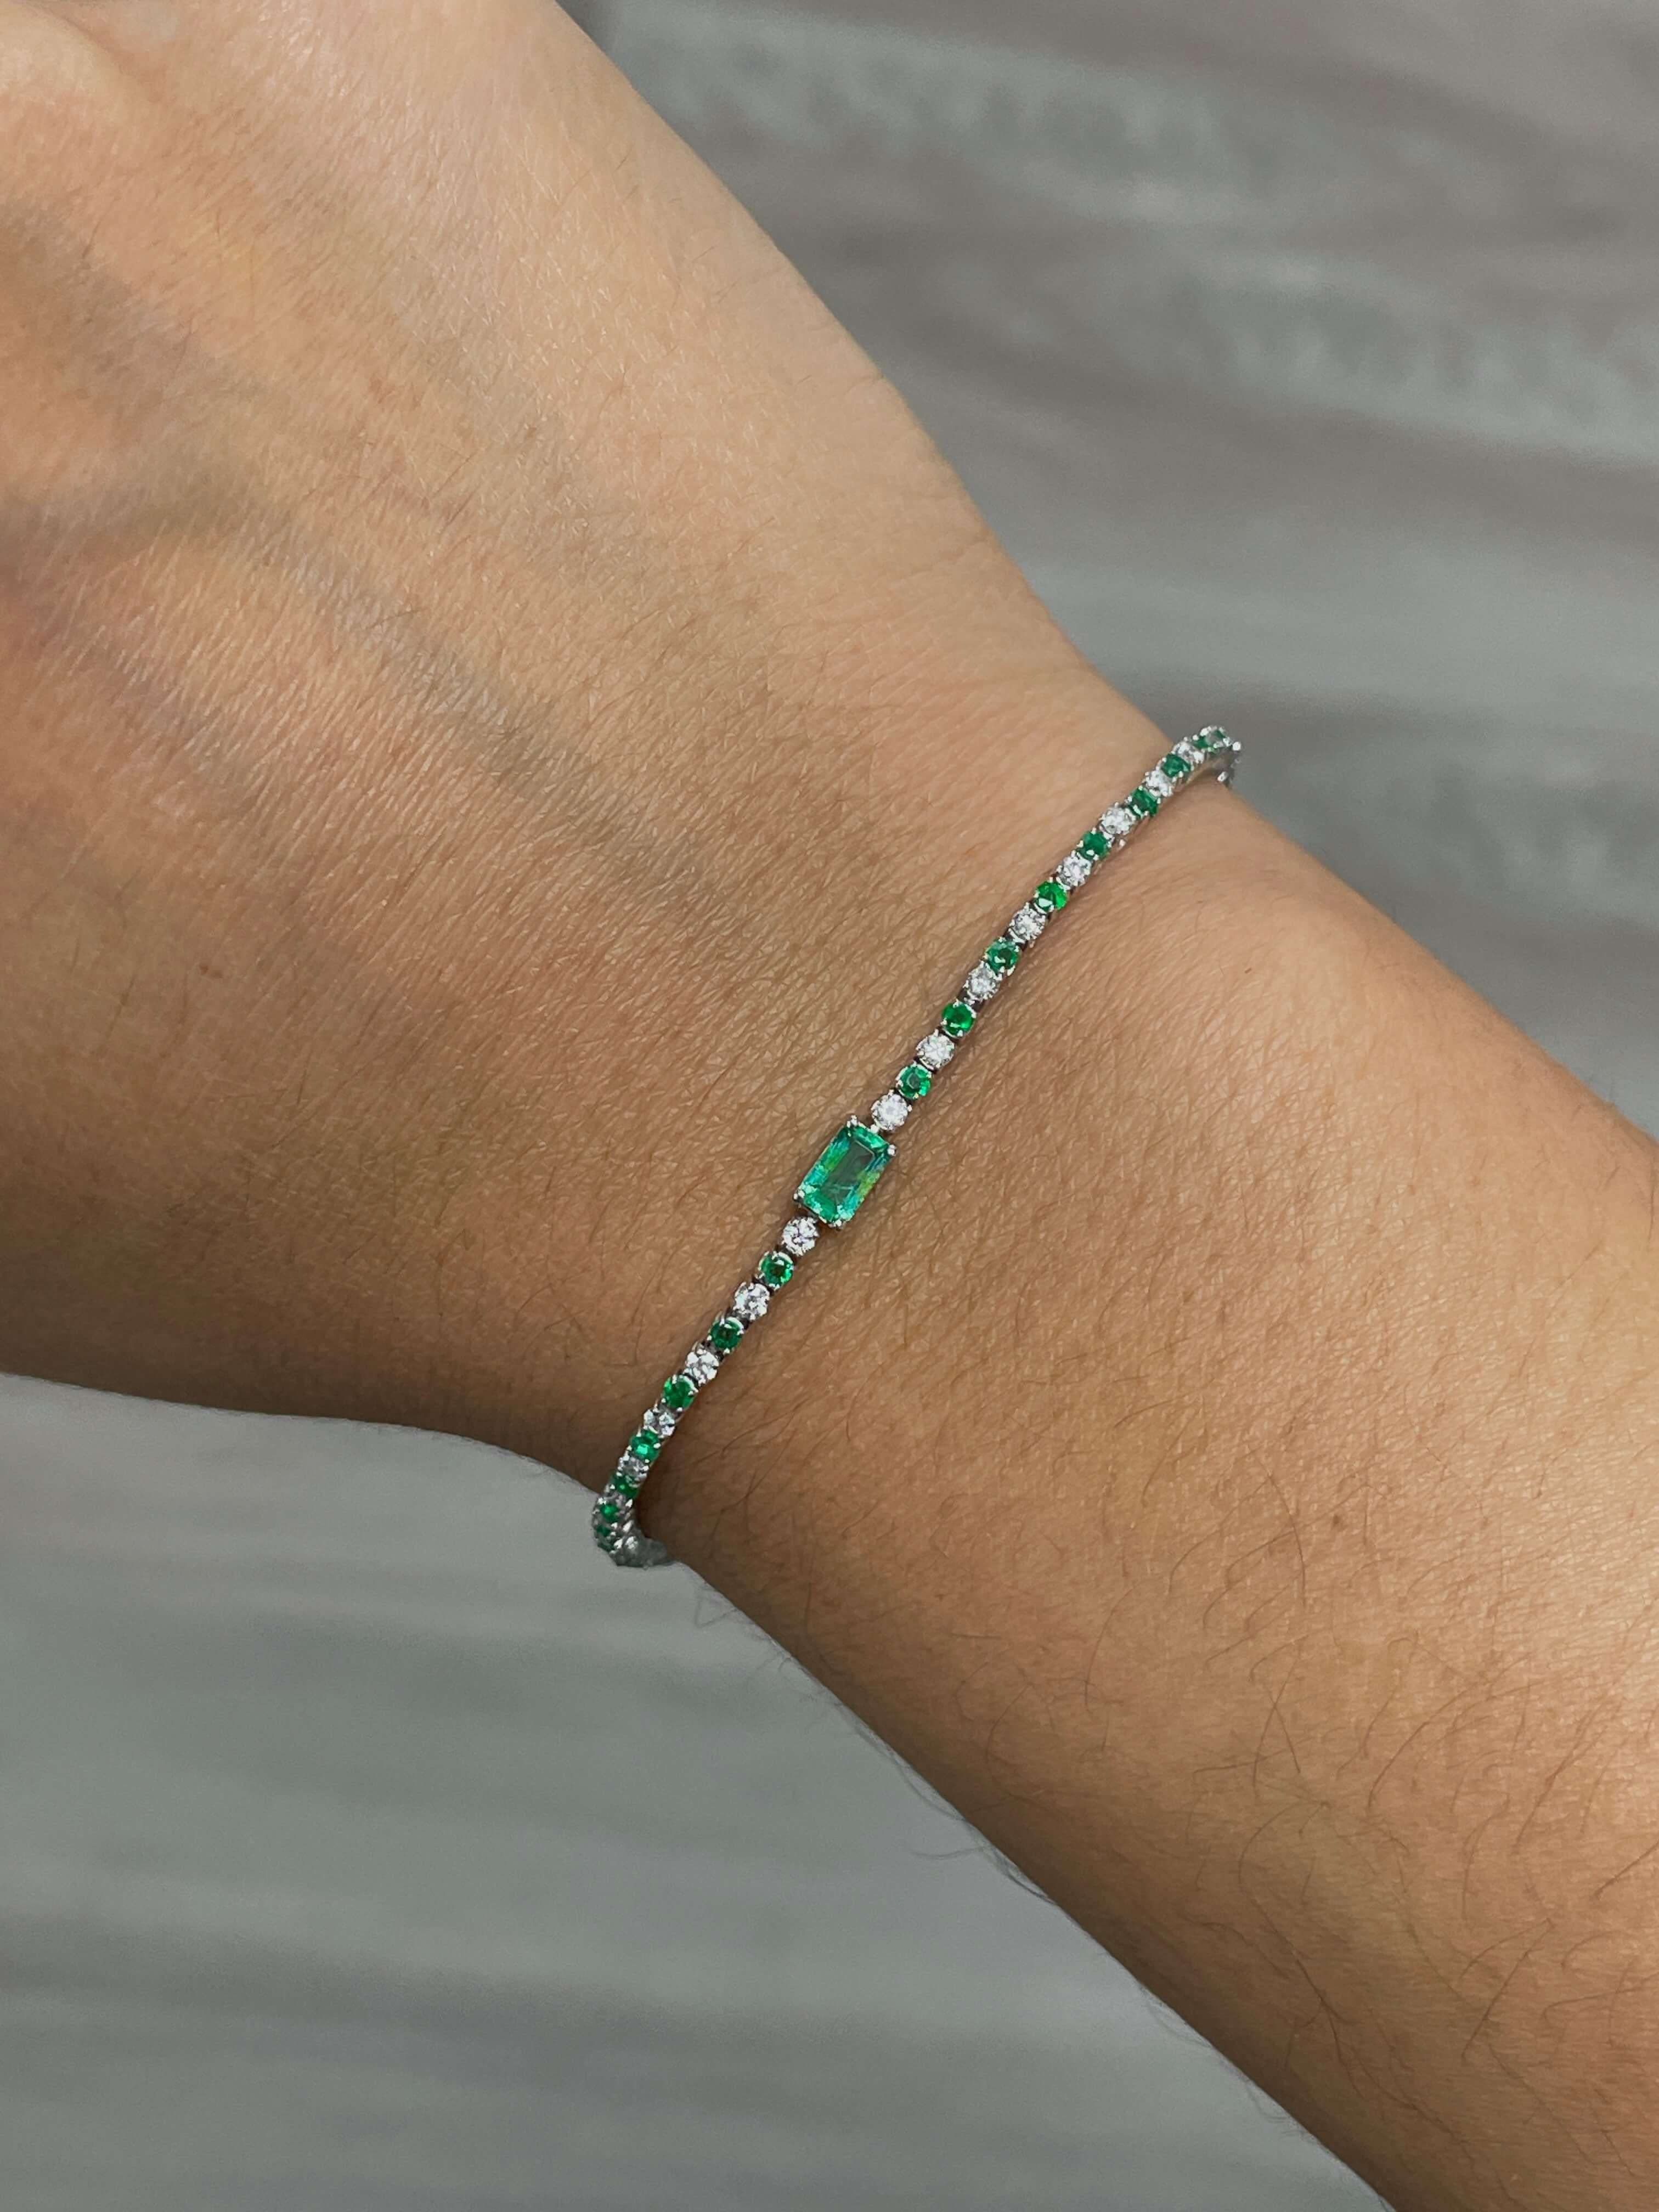 Bringen Sie Farbe in Ihre Alltagsgarderobe mit diesem Smaragd- und Diamantarmband mit einem wunderschönen Smaragd in der Mitte und abwechselnd runden Diamanten und Smaragden. Erhältlich in zwei Mittelsteingrößen, 7x5 und 5x3.

14K Weißgold Smaragd-